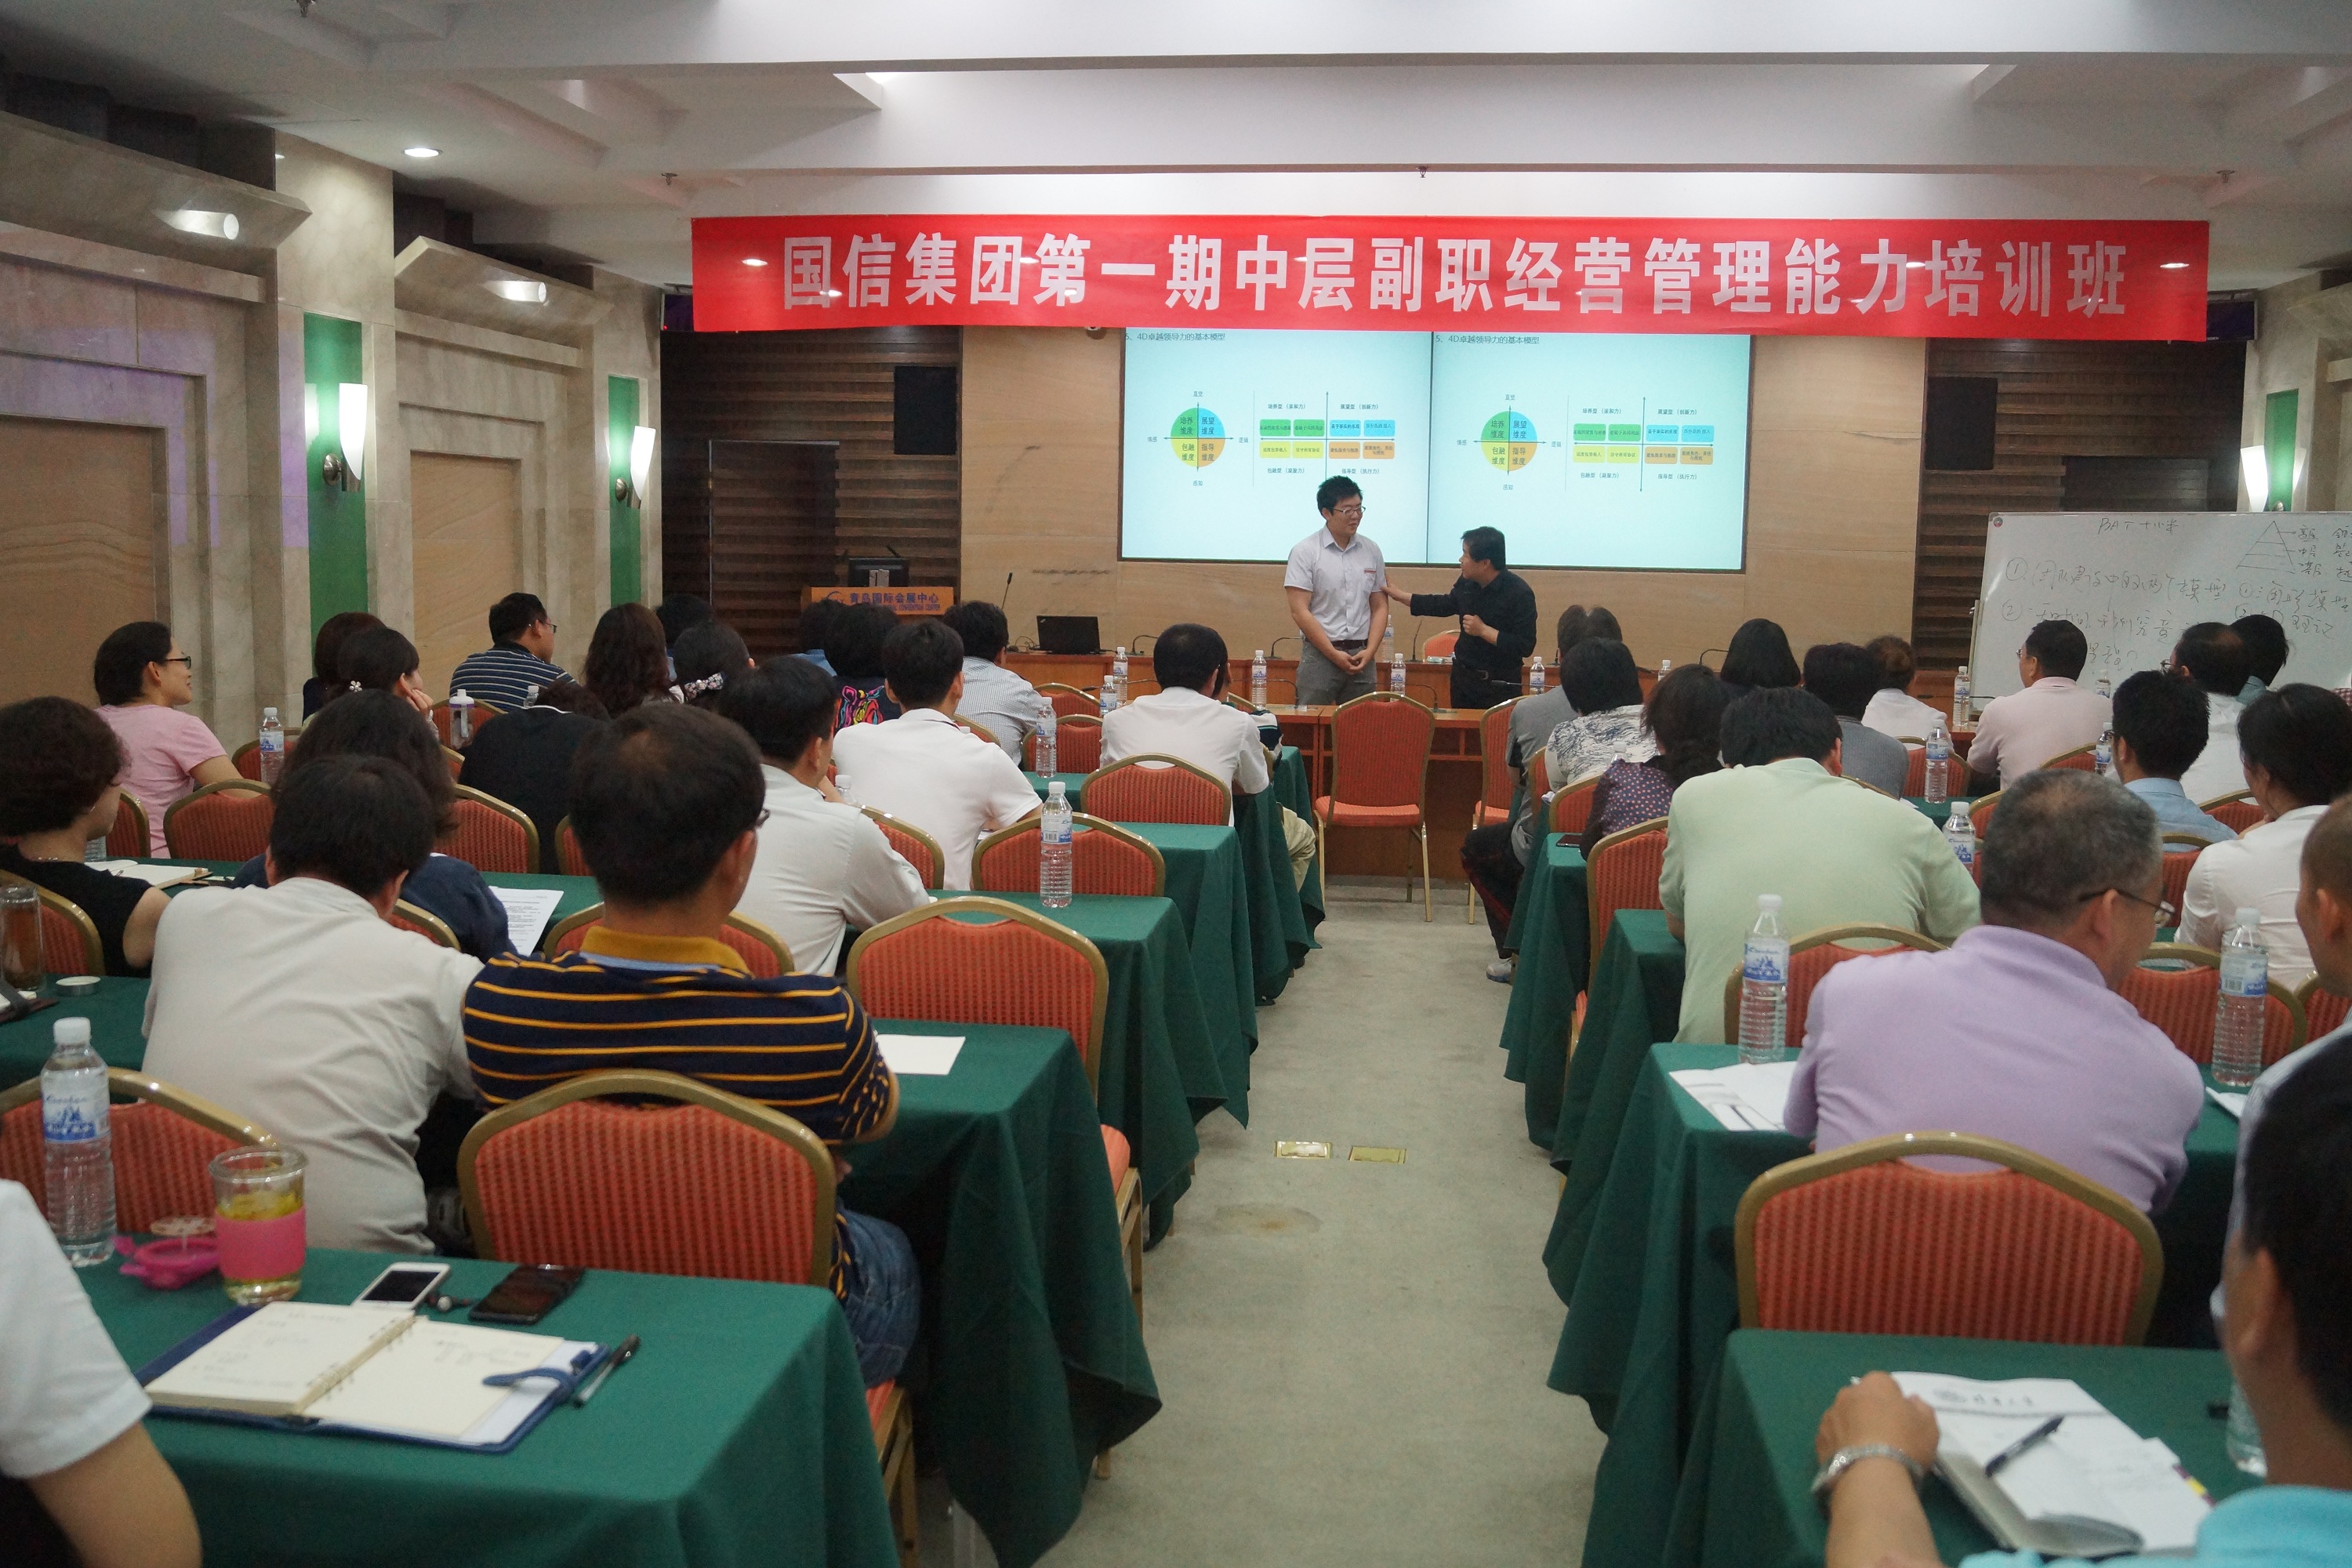 刘春华受邀为国信集团做团队建设培训